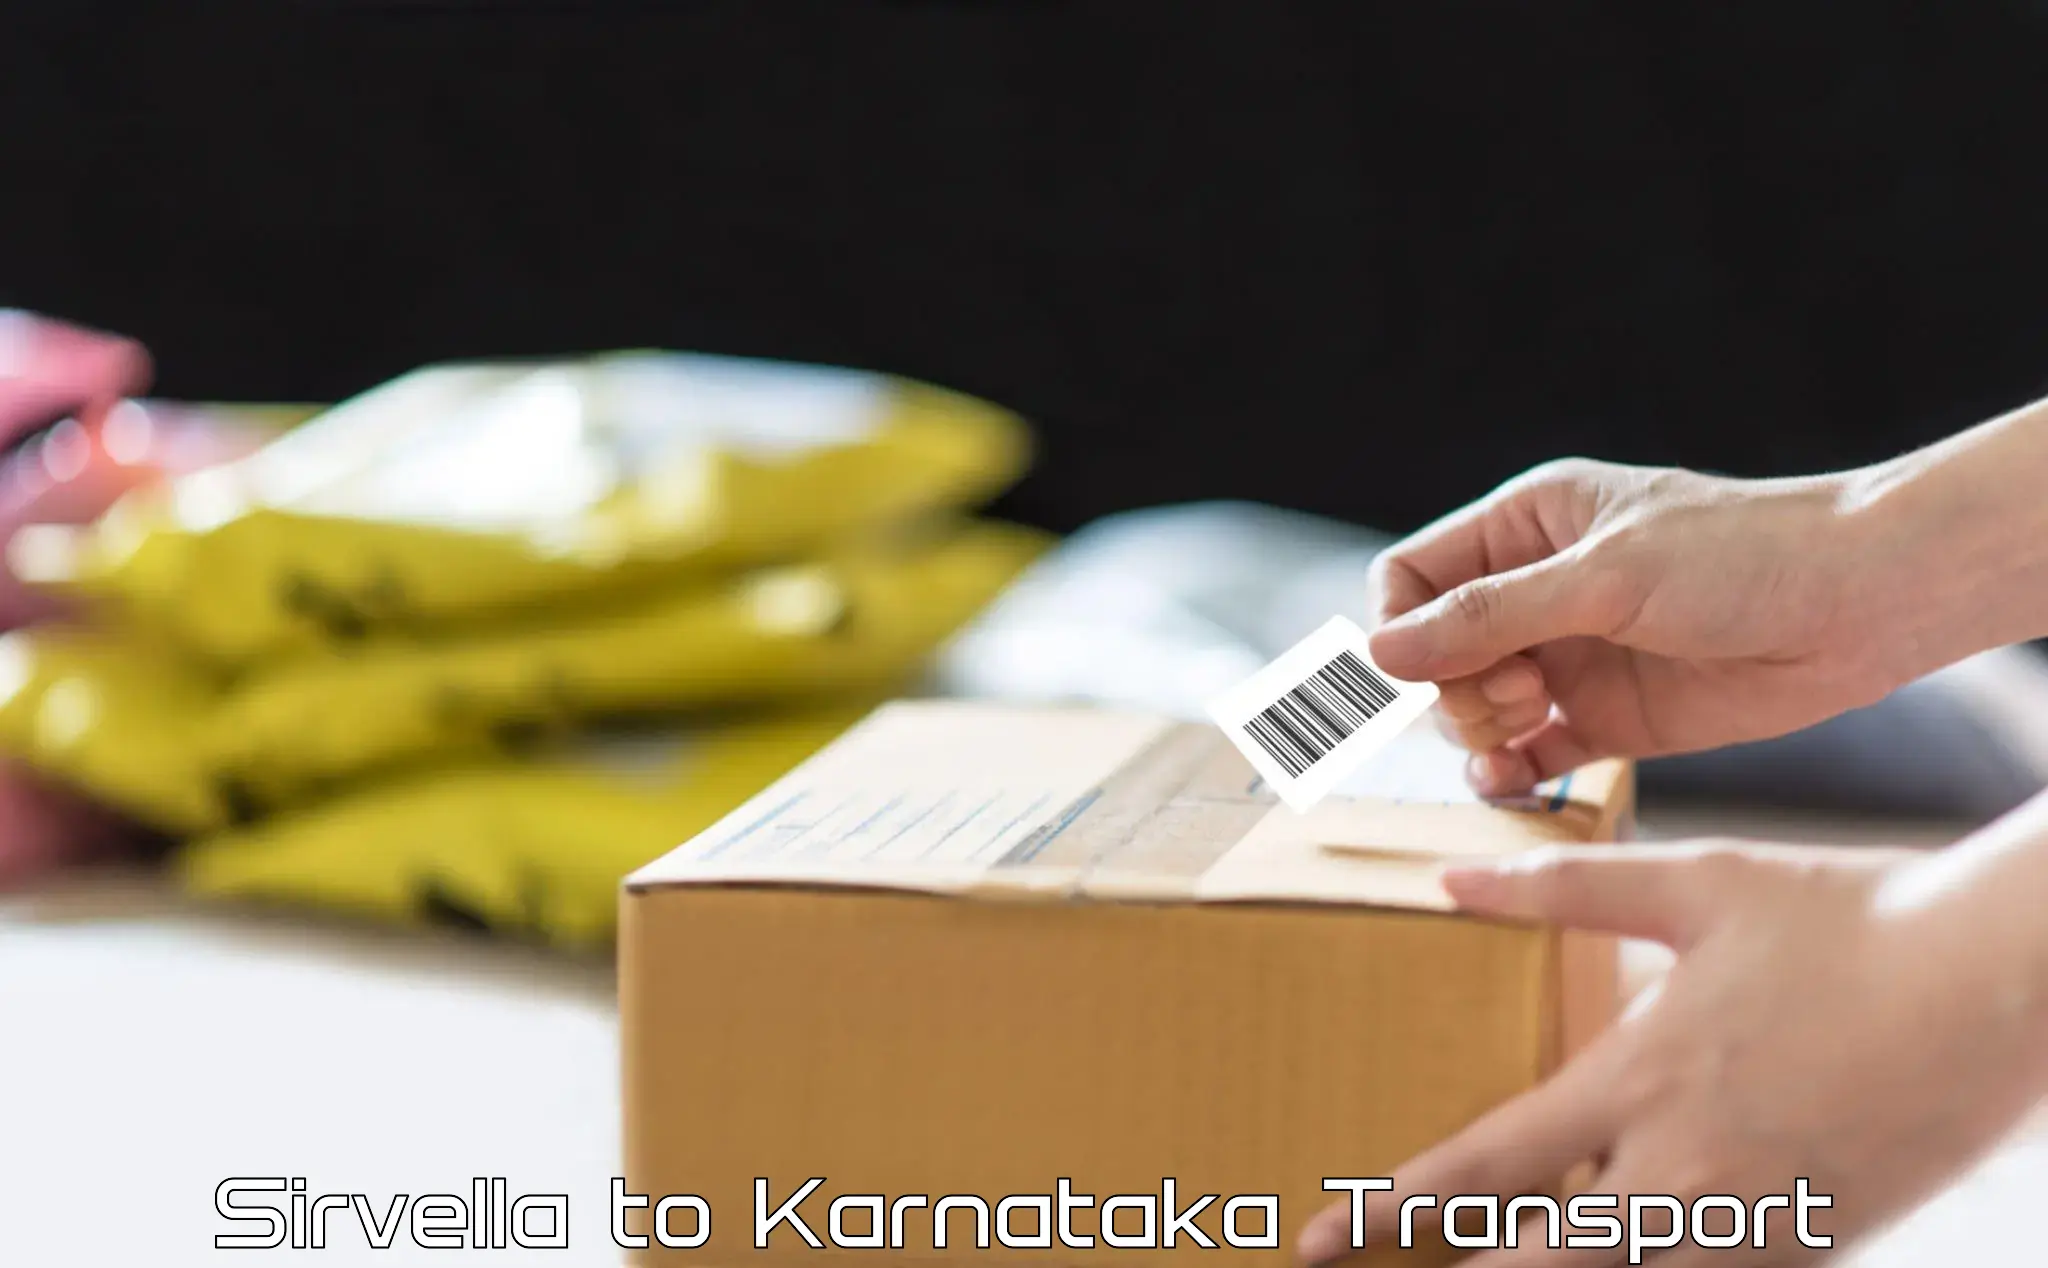 Road transport online services Sirvella to Jayanagar